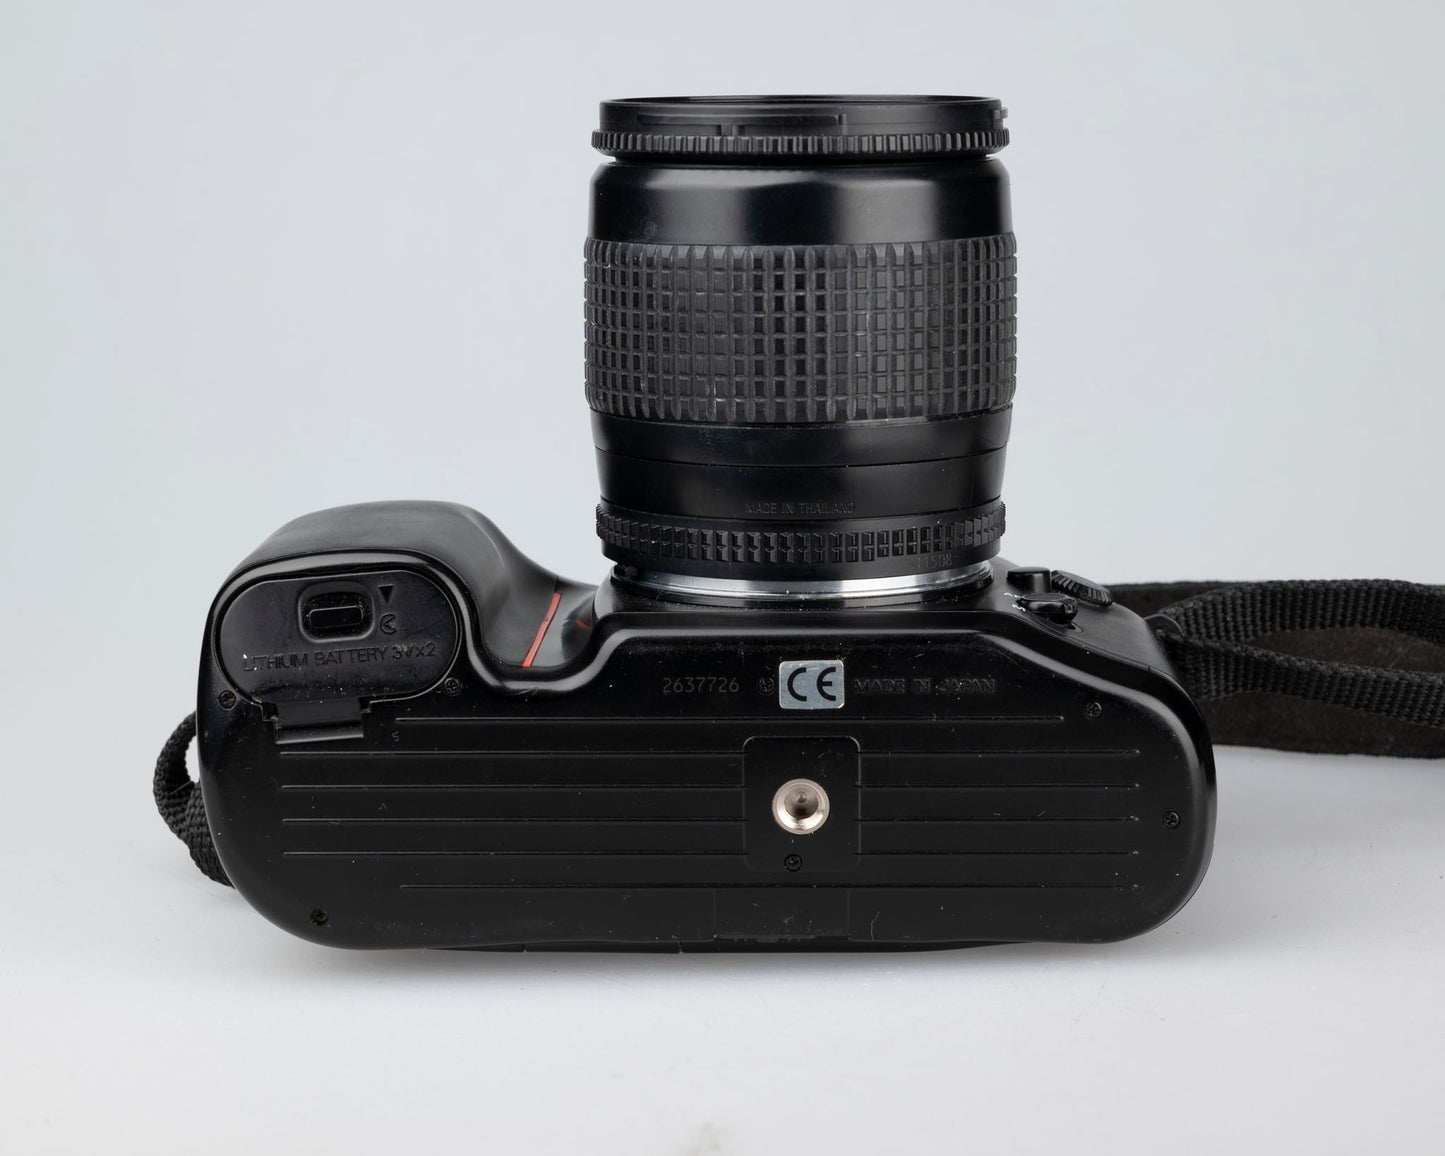 Reflex Nikon F70 35 mm avec objectif AF Nikkor 28-80 mm 3,5-5,6D